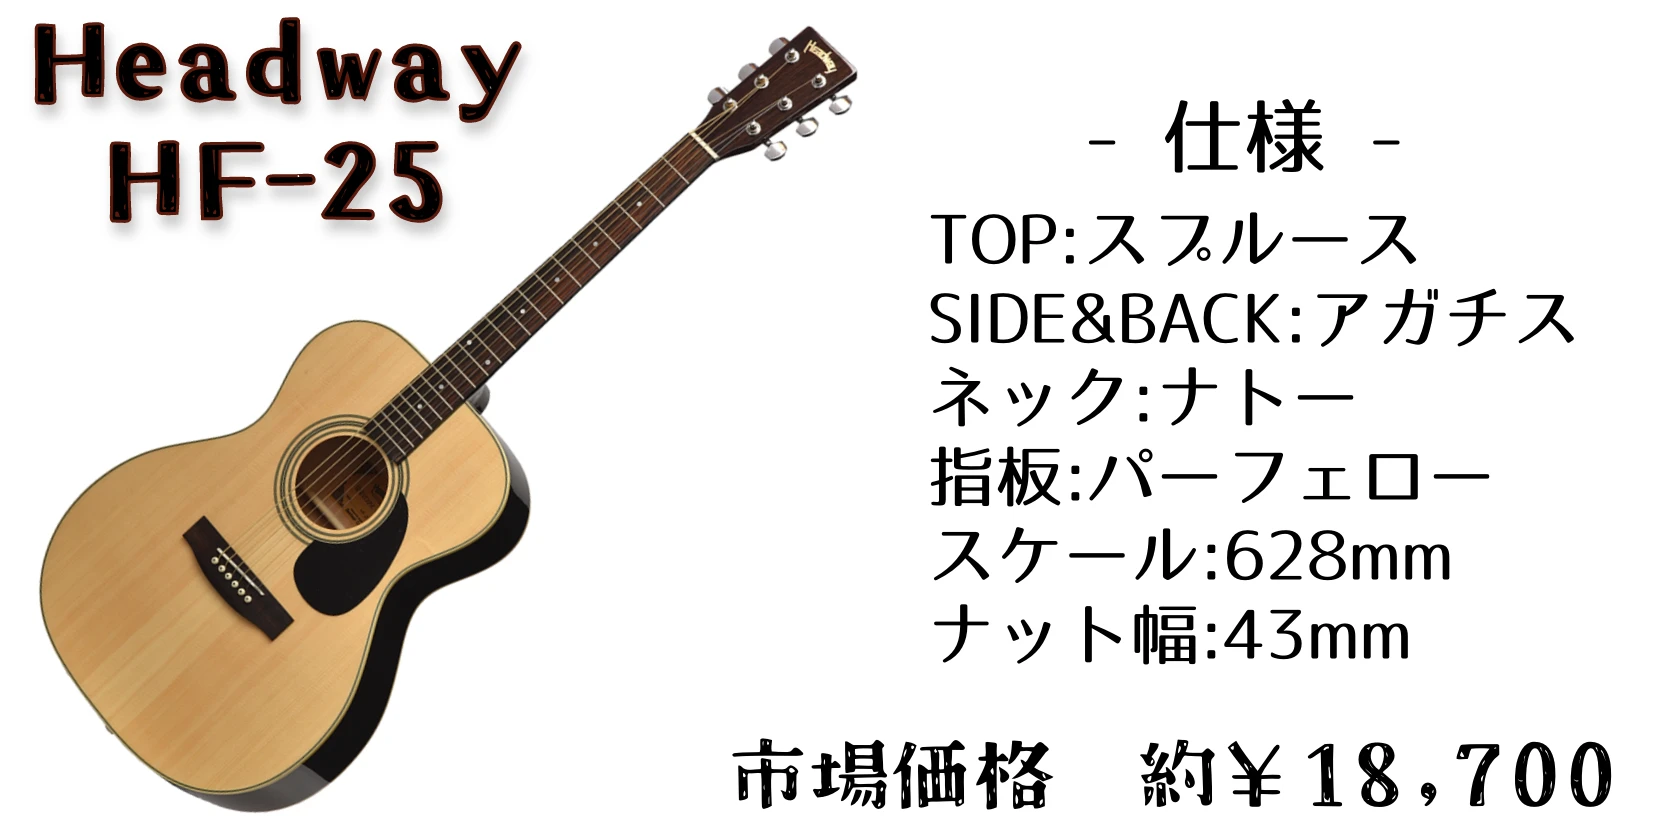 2万円以下で買える初心者おすすめアコースティックギター「Headway HF 